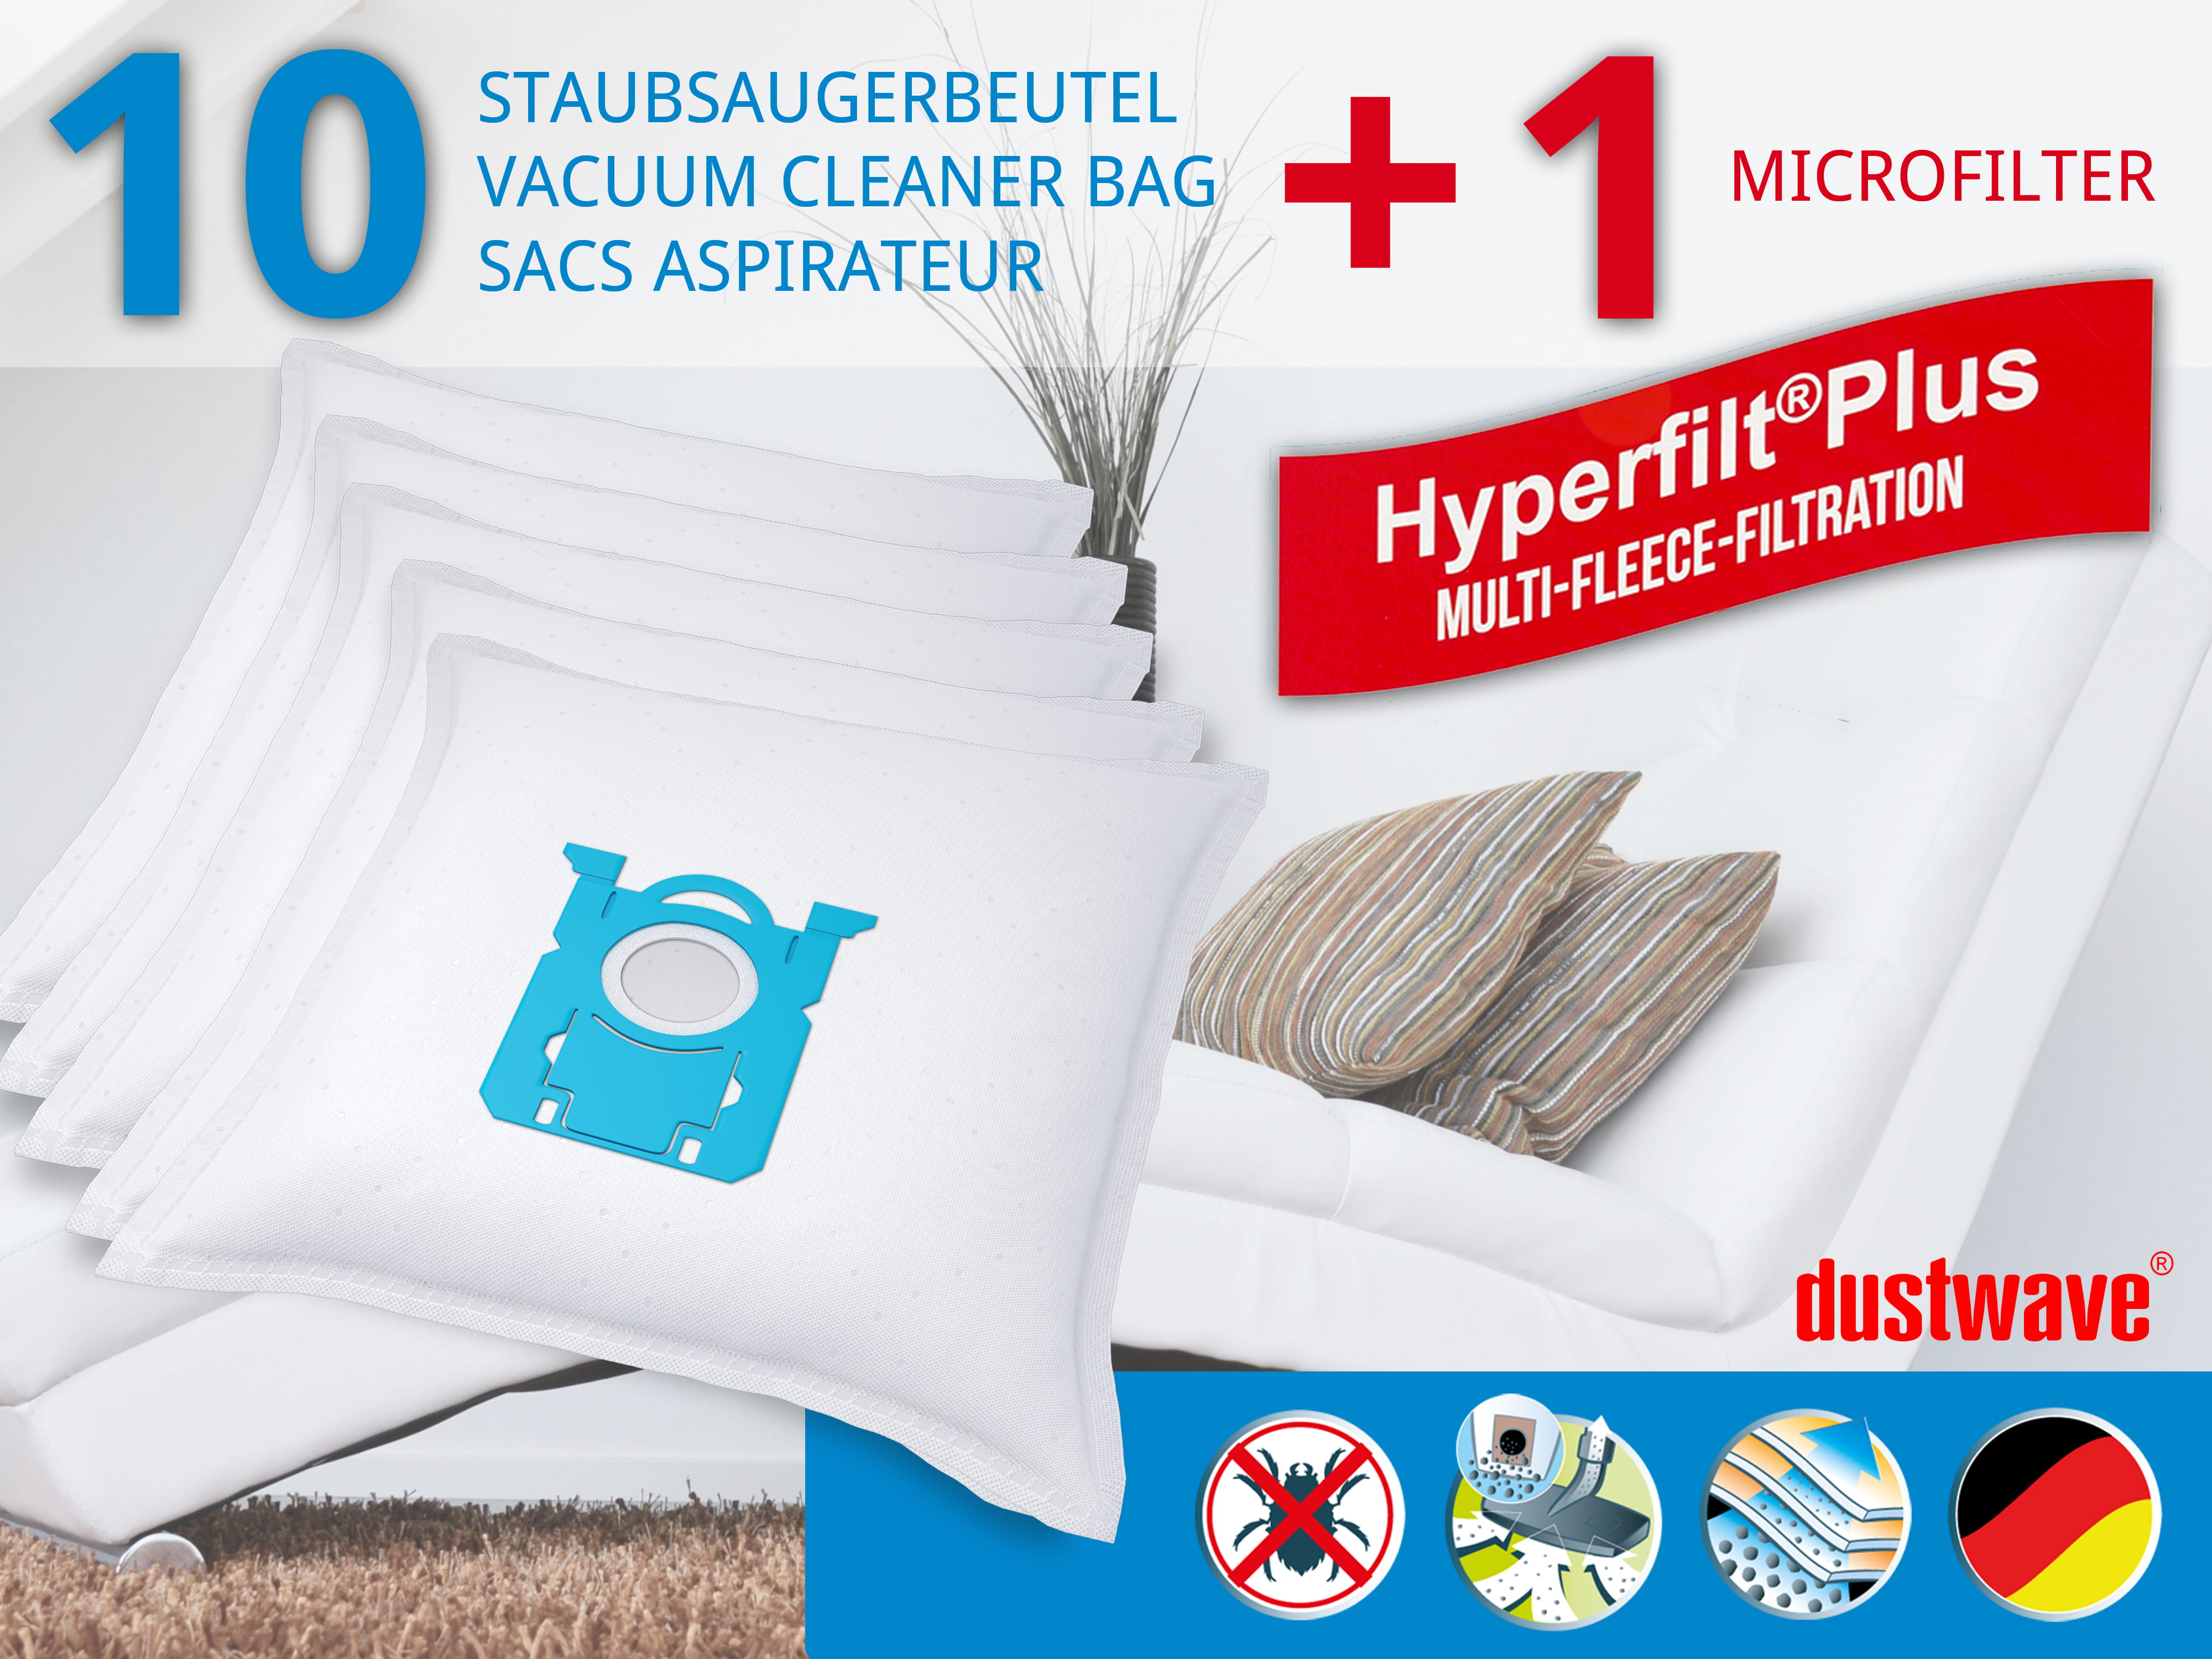 Dustwave® 10 Staubsaugerbeutel für AEG VX9-4-ANIMAL - hocheffizient, mehrlagiges Mikrovlies mit Hygieneverschluss - Made in Germany